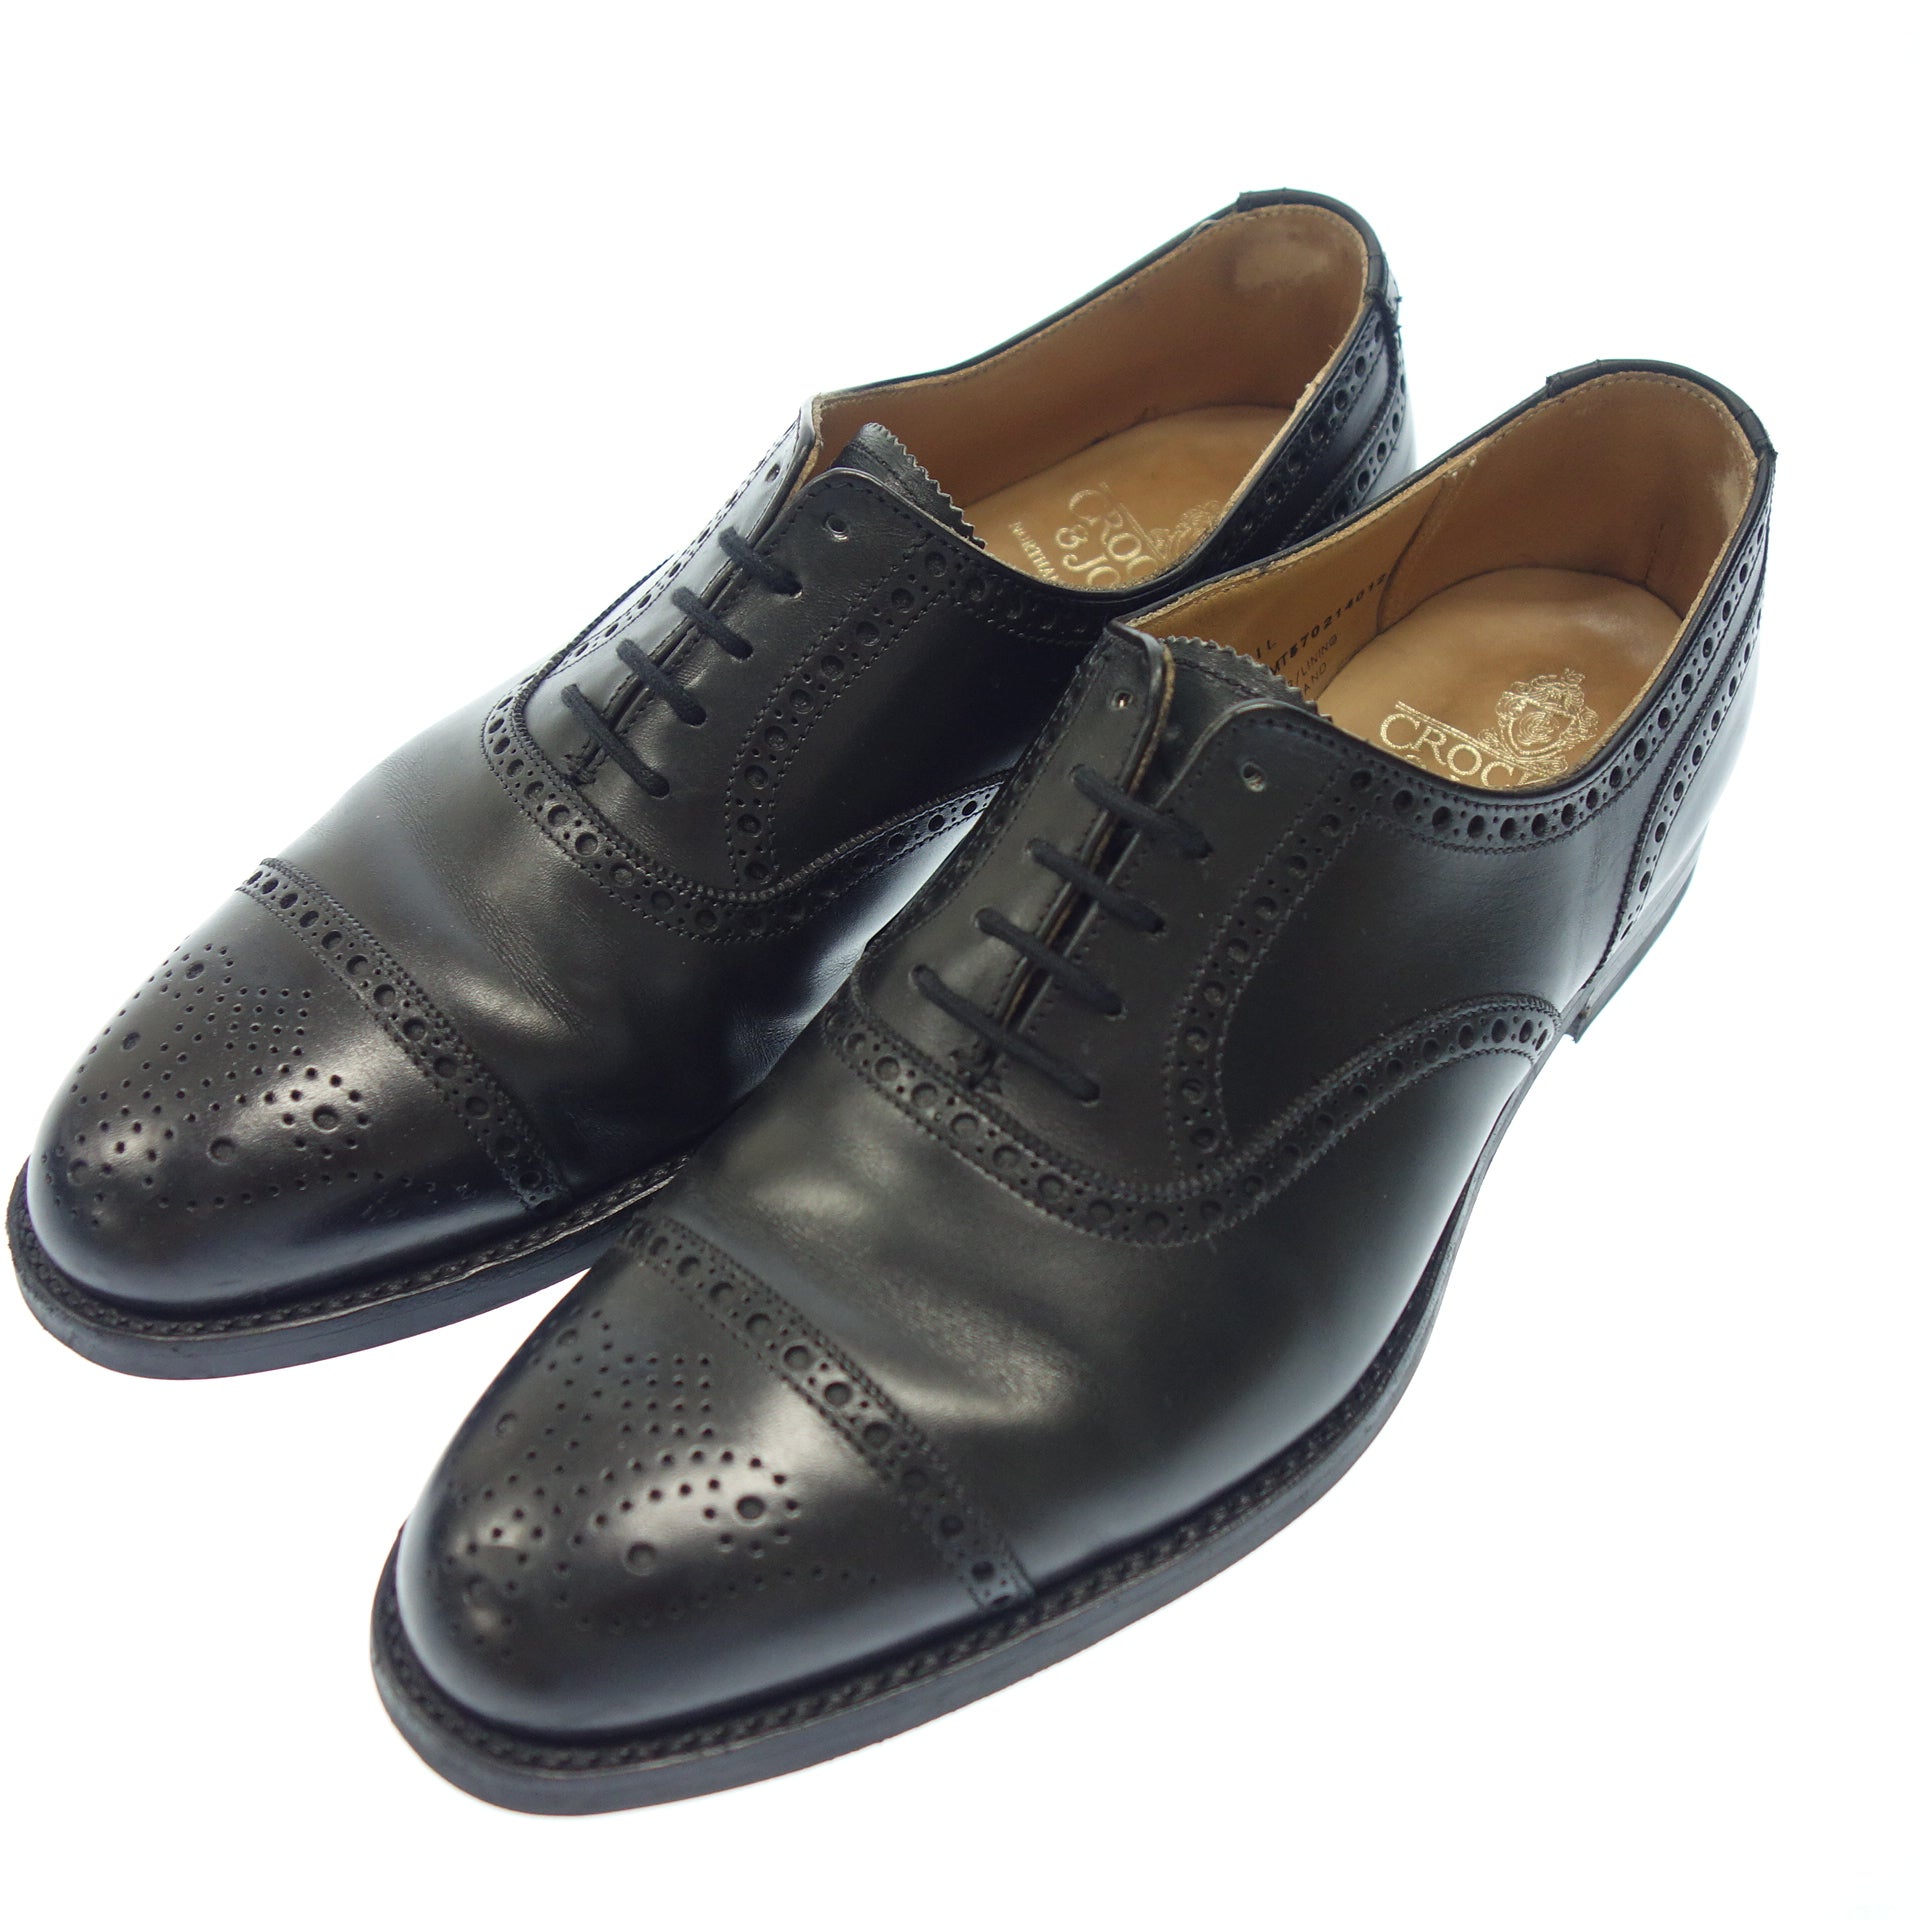 【特別大特価】CROCKETT & JONES セミブローグ黒 YEOVIL 6(24.5) 靴